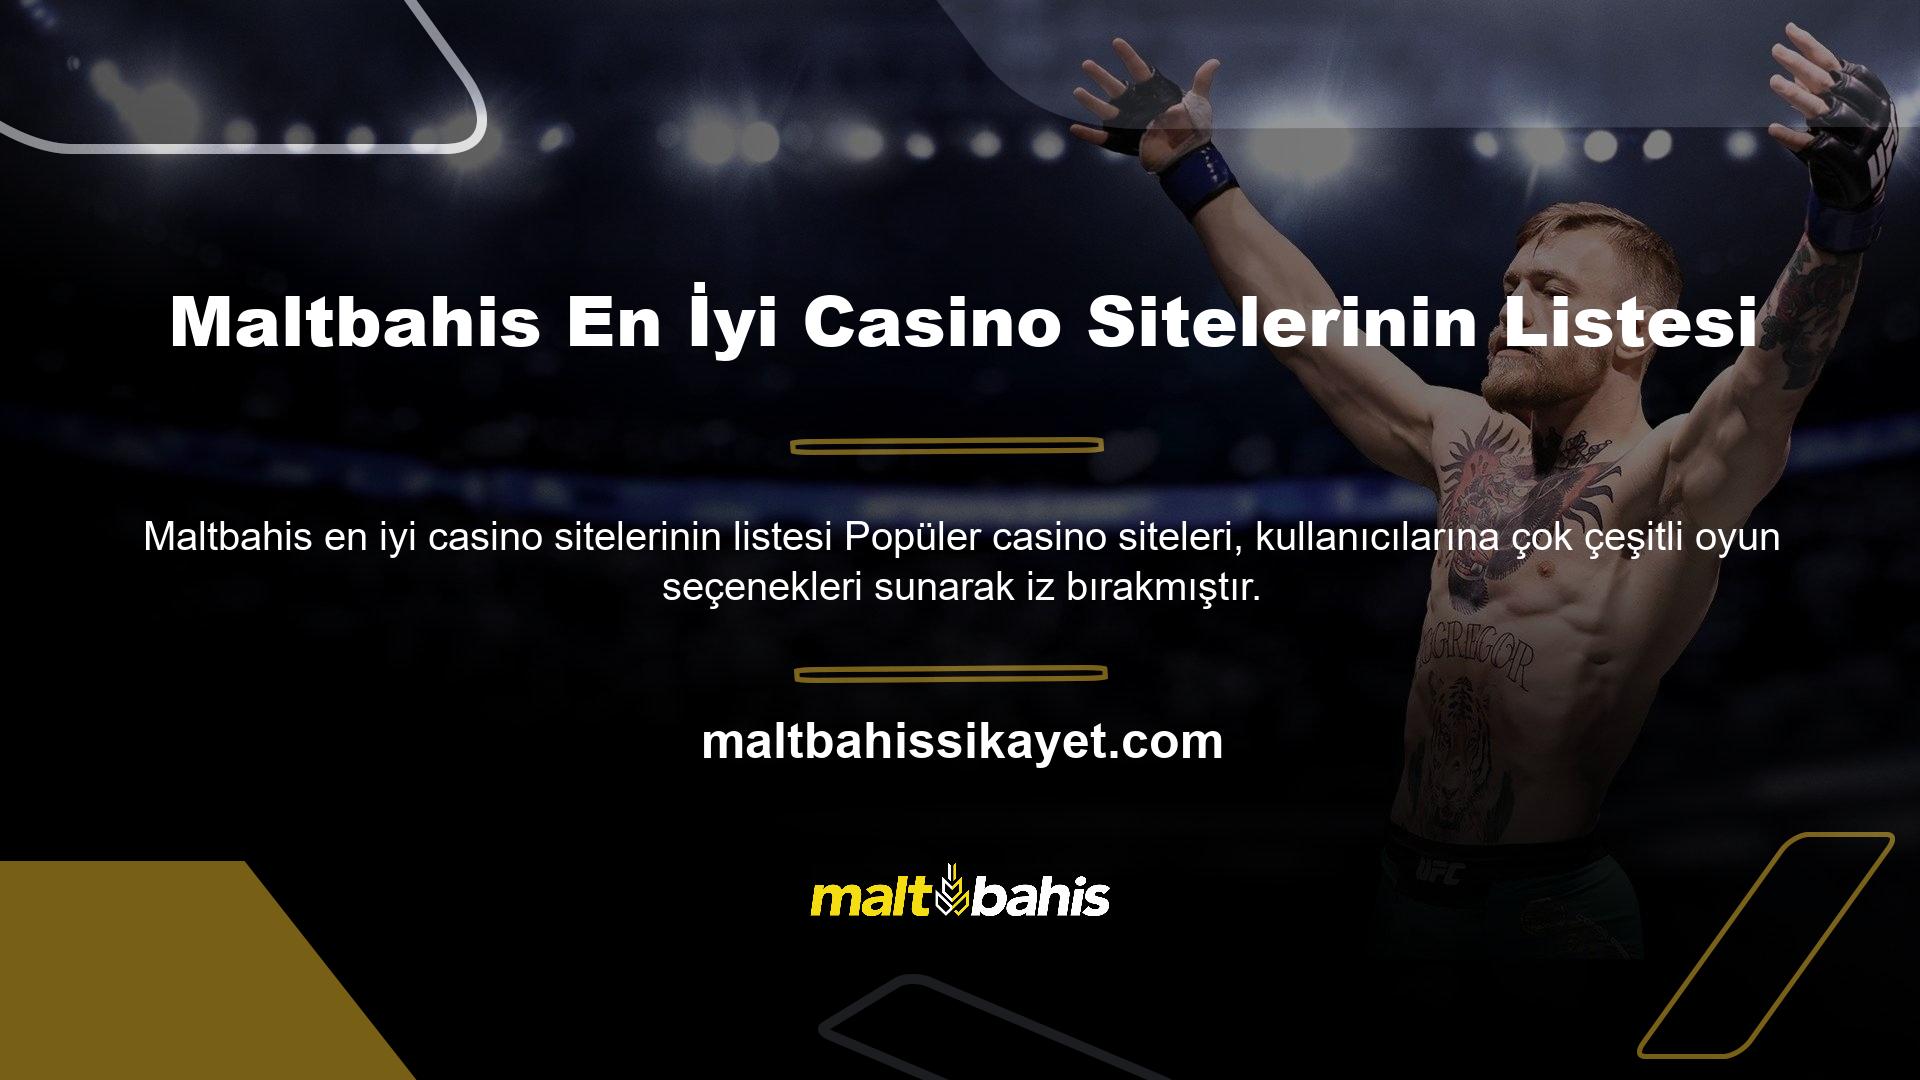 Maltbahis en iyi casino sitelerinin listesi